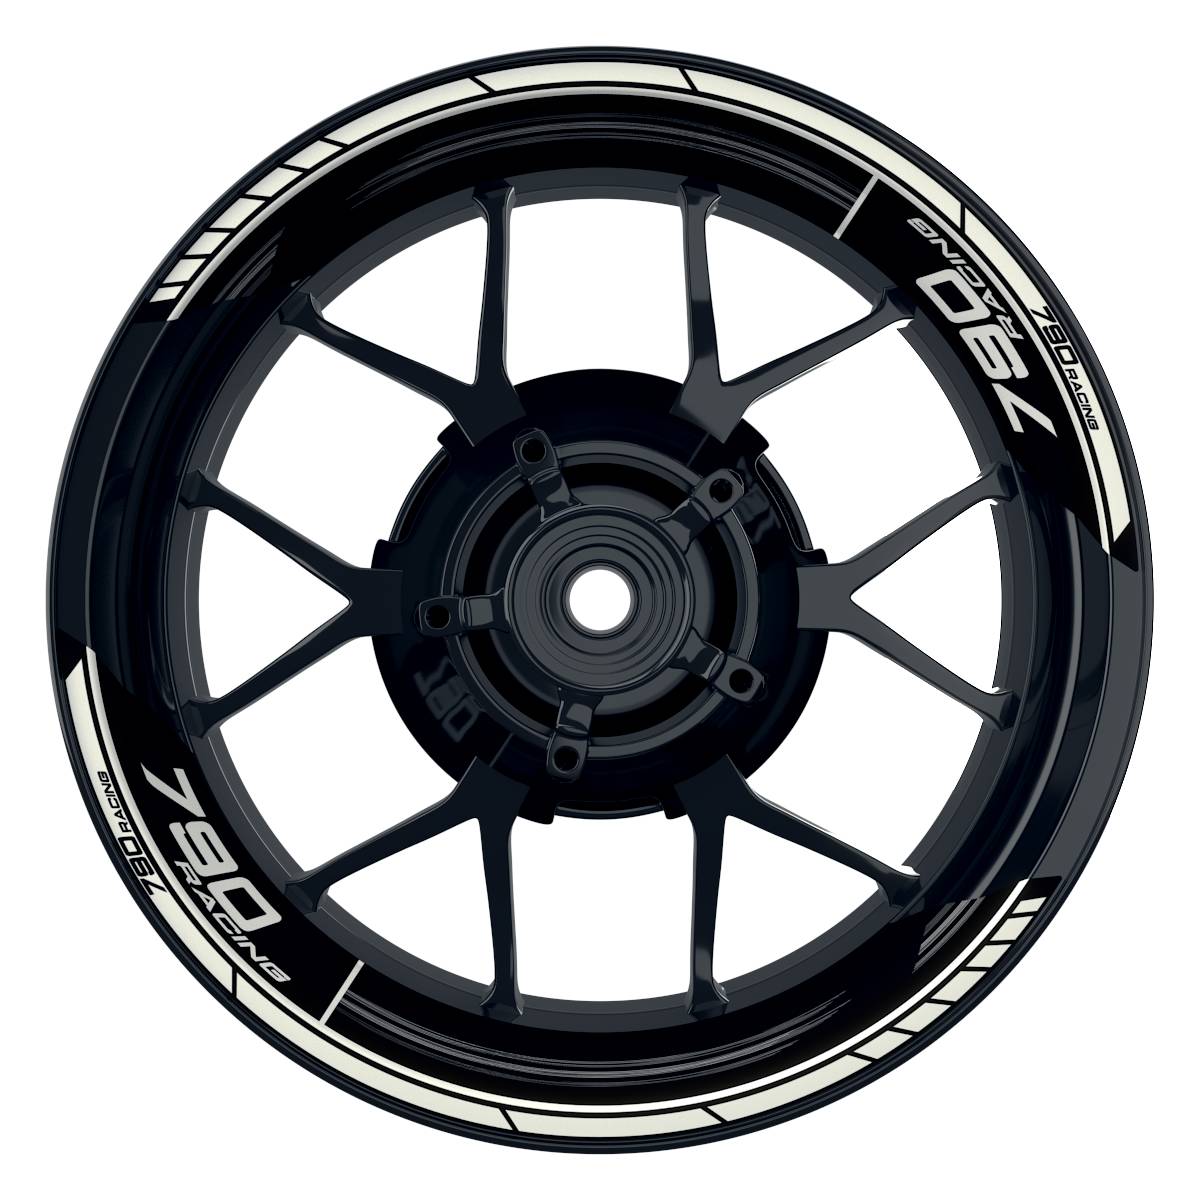 KTM Racing 790 Scratched schwarz weiss Frontansicht